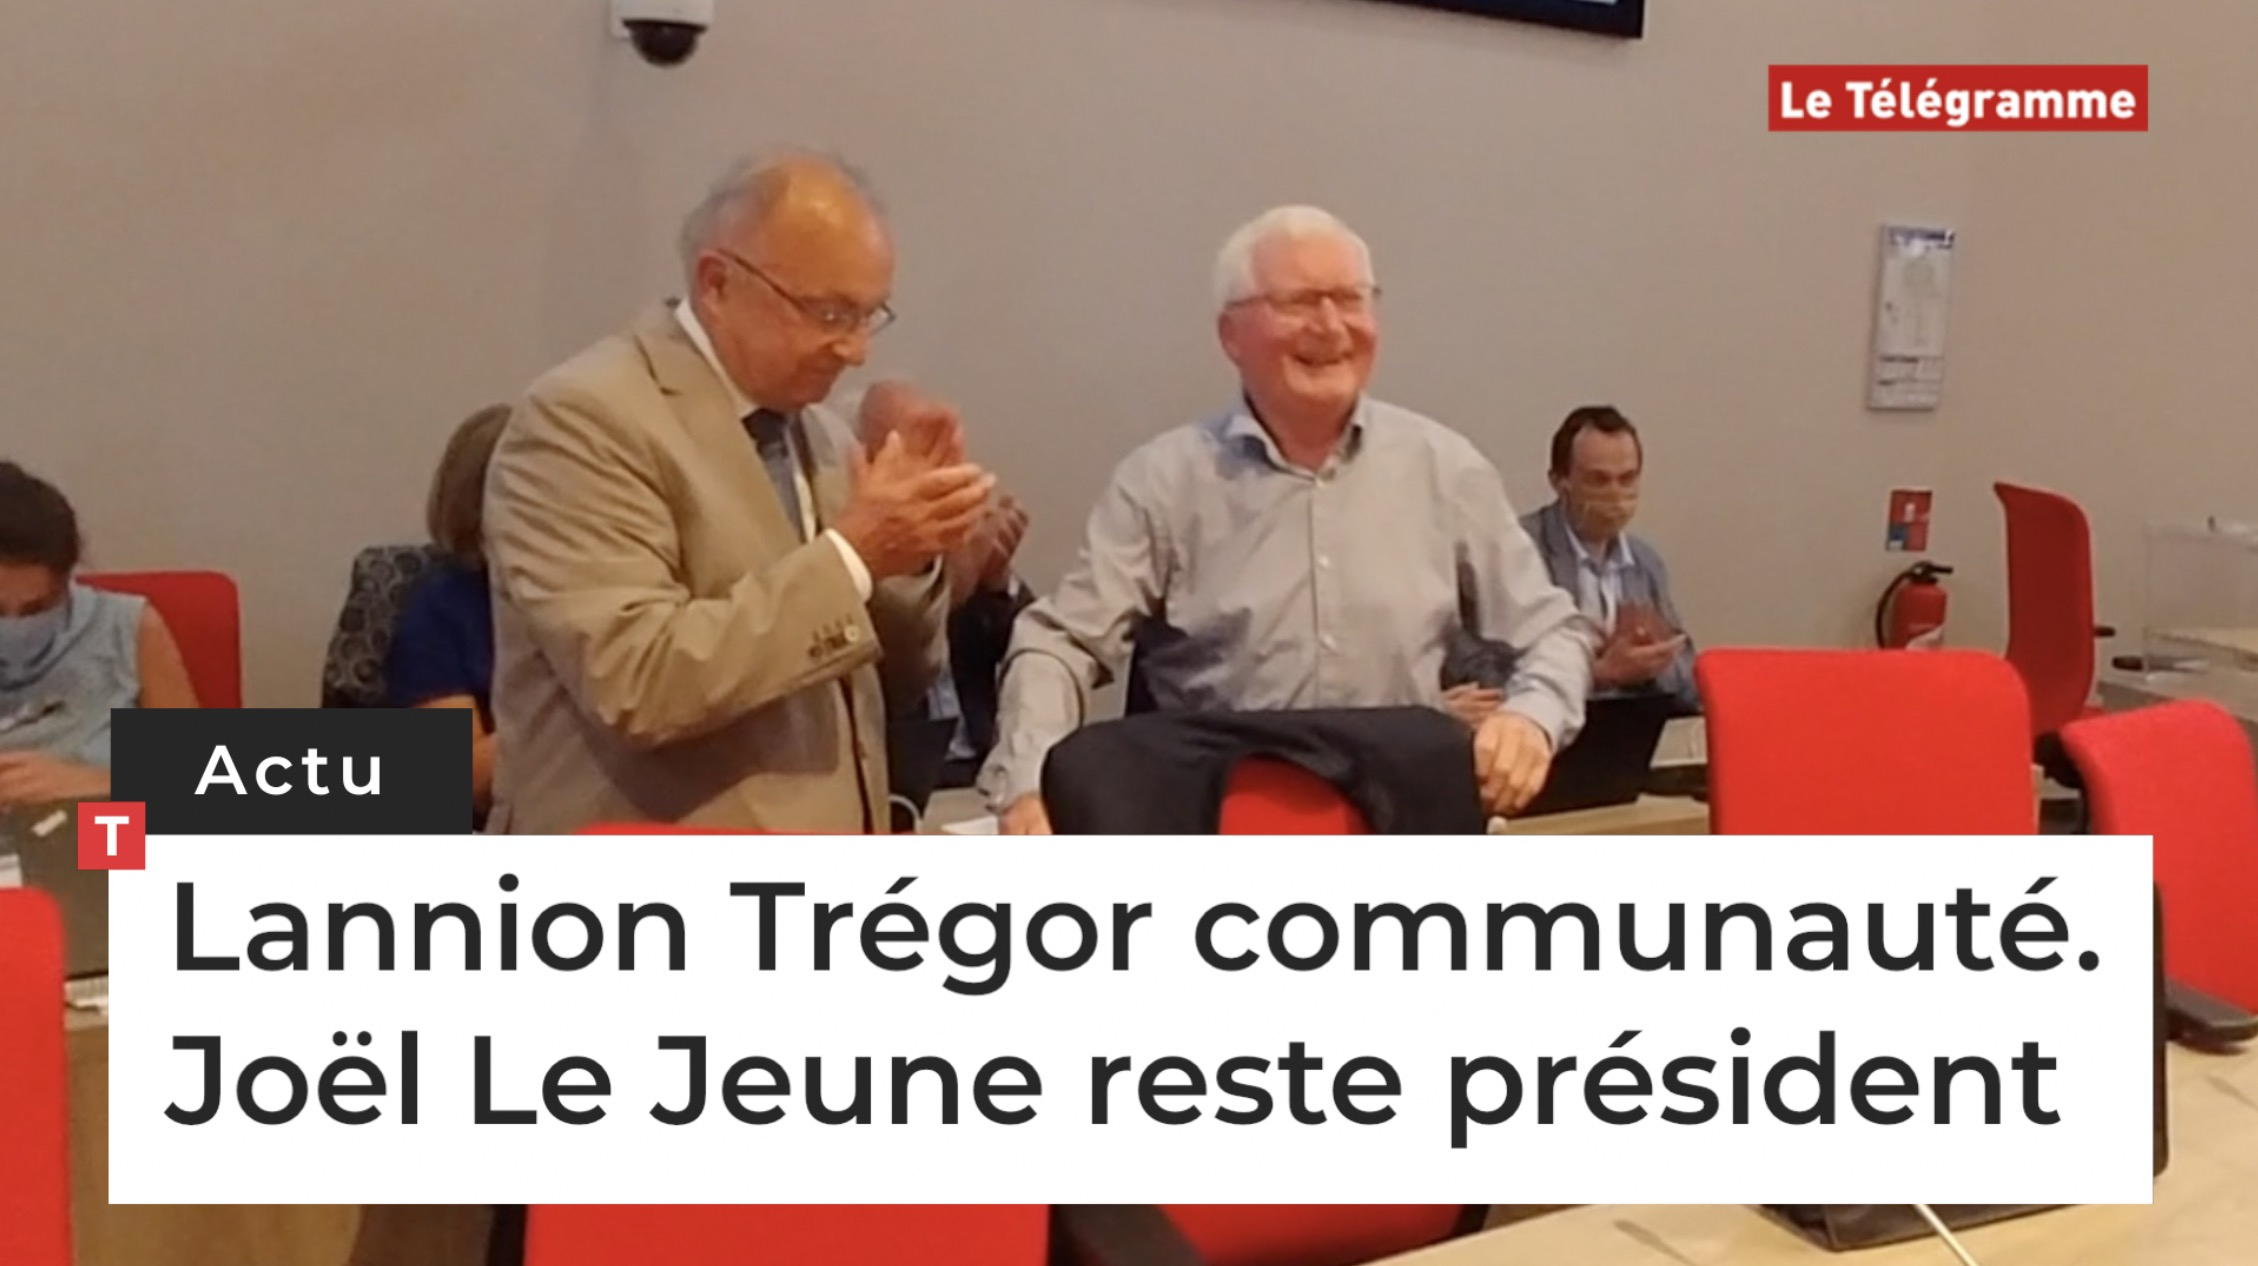 Lannion Trégor communauté. Joël Le Jeune reste président (Le Télégramme)